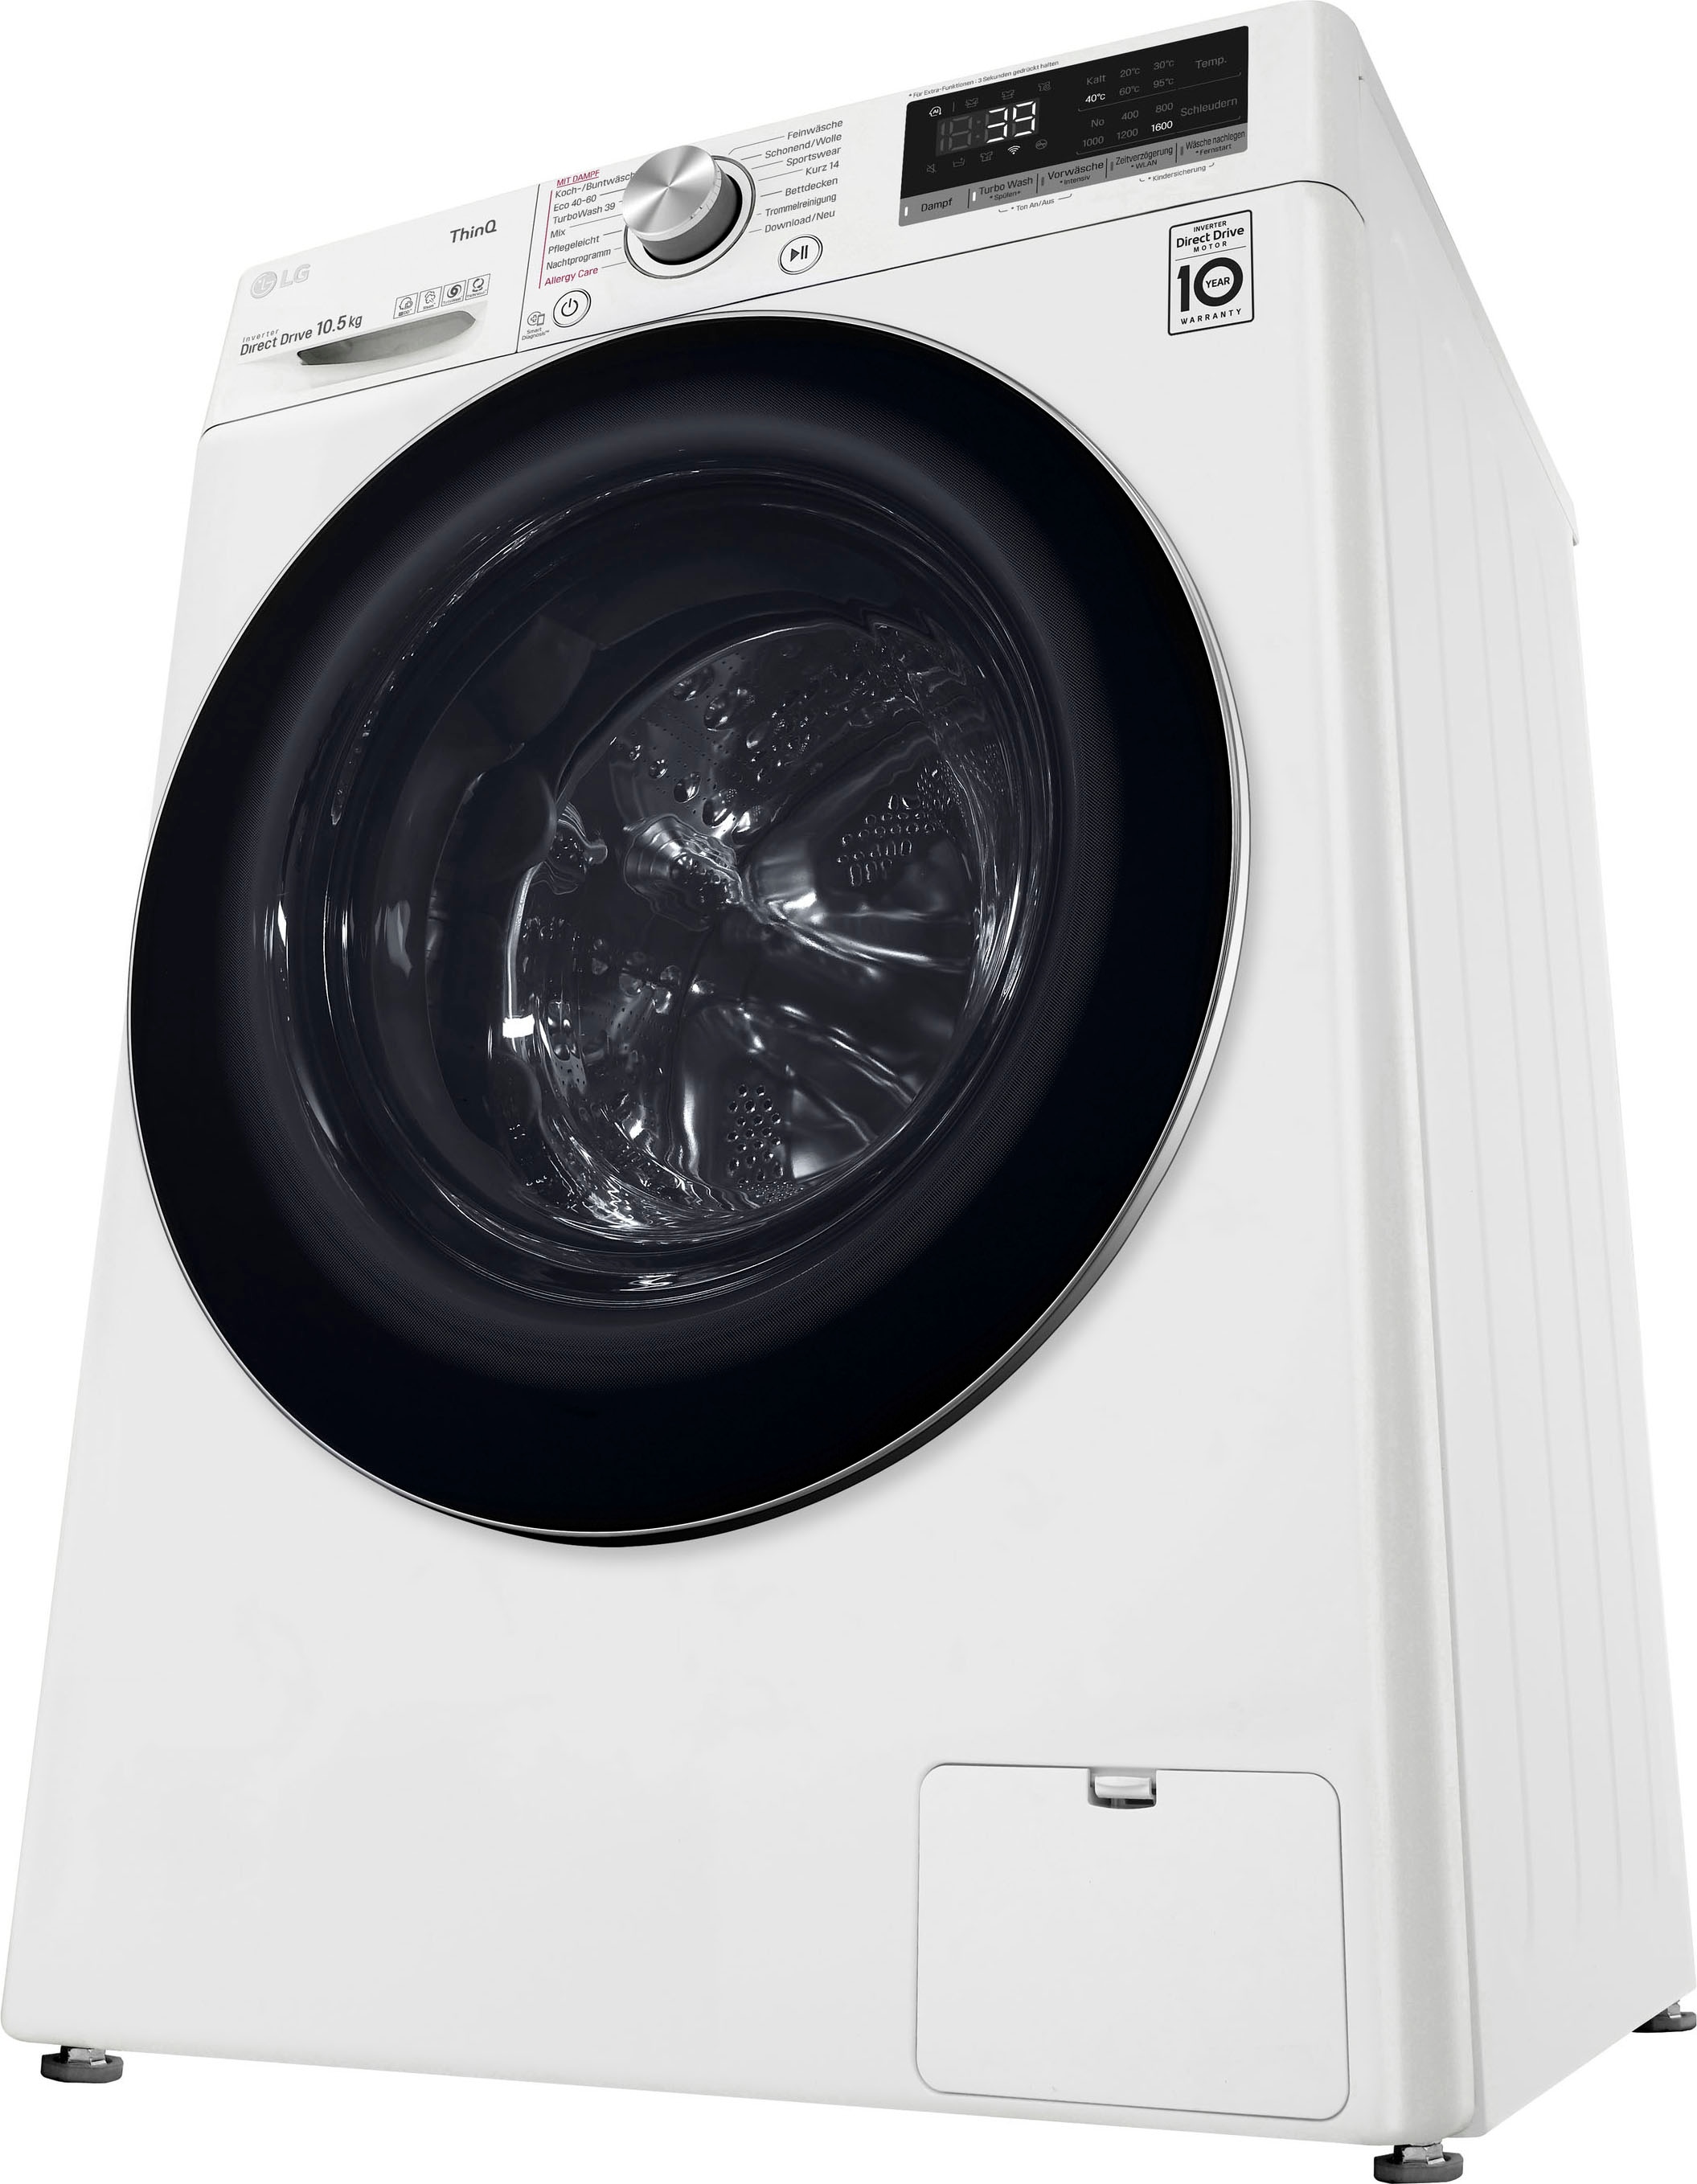 LG Waschmaschine »F4WR7012«, Serie 7, kg, 1400 kaufen F4WR7012, 11 U/min online